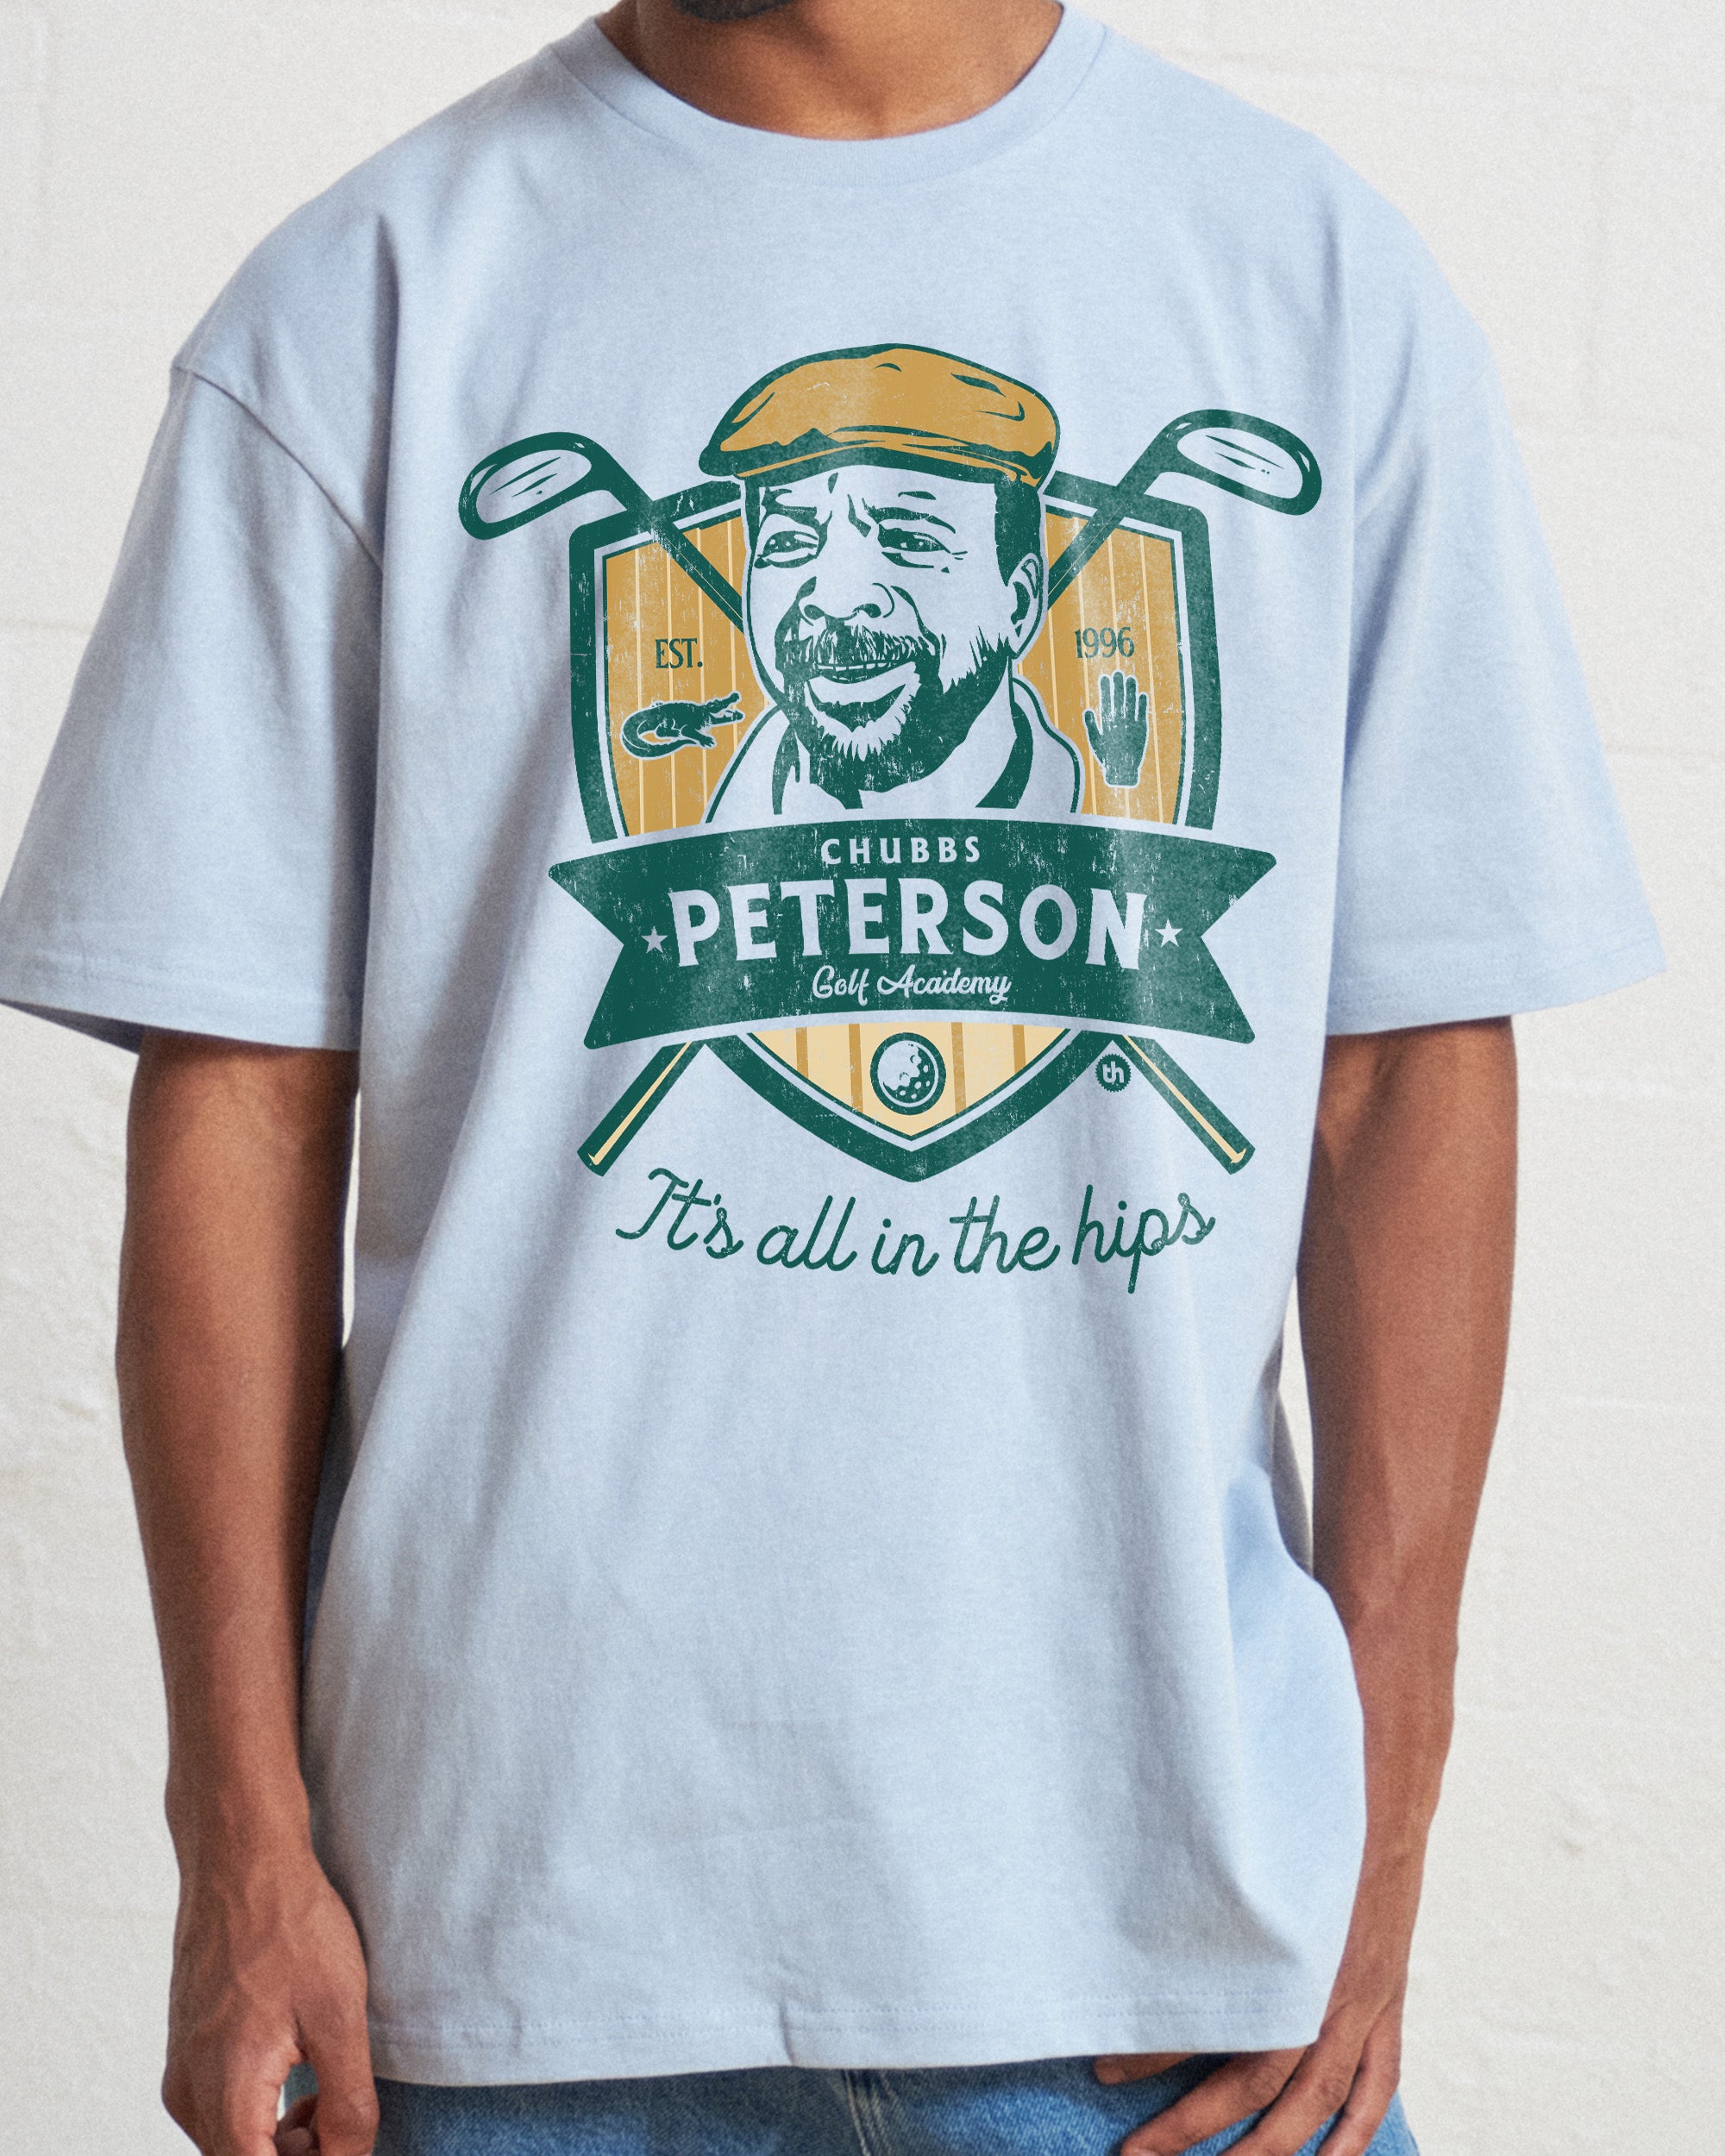 Chubbs Peterson Golf Academy T-Shirt Australia Online